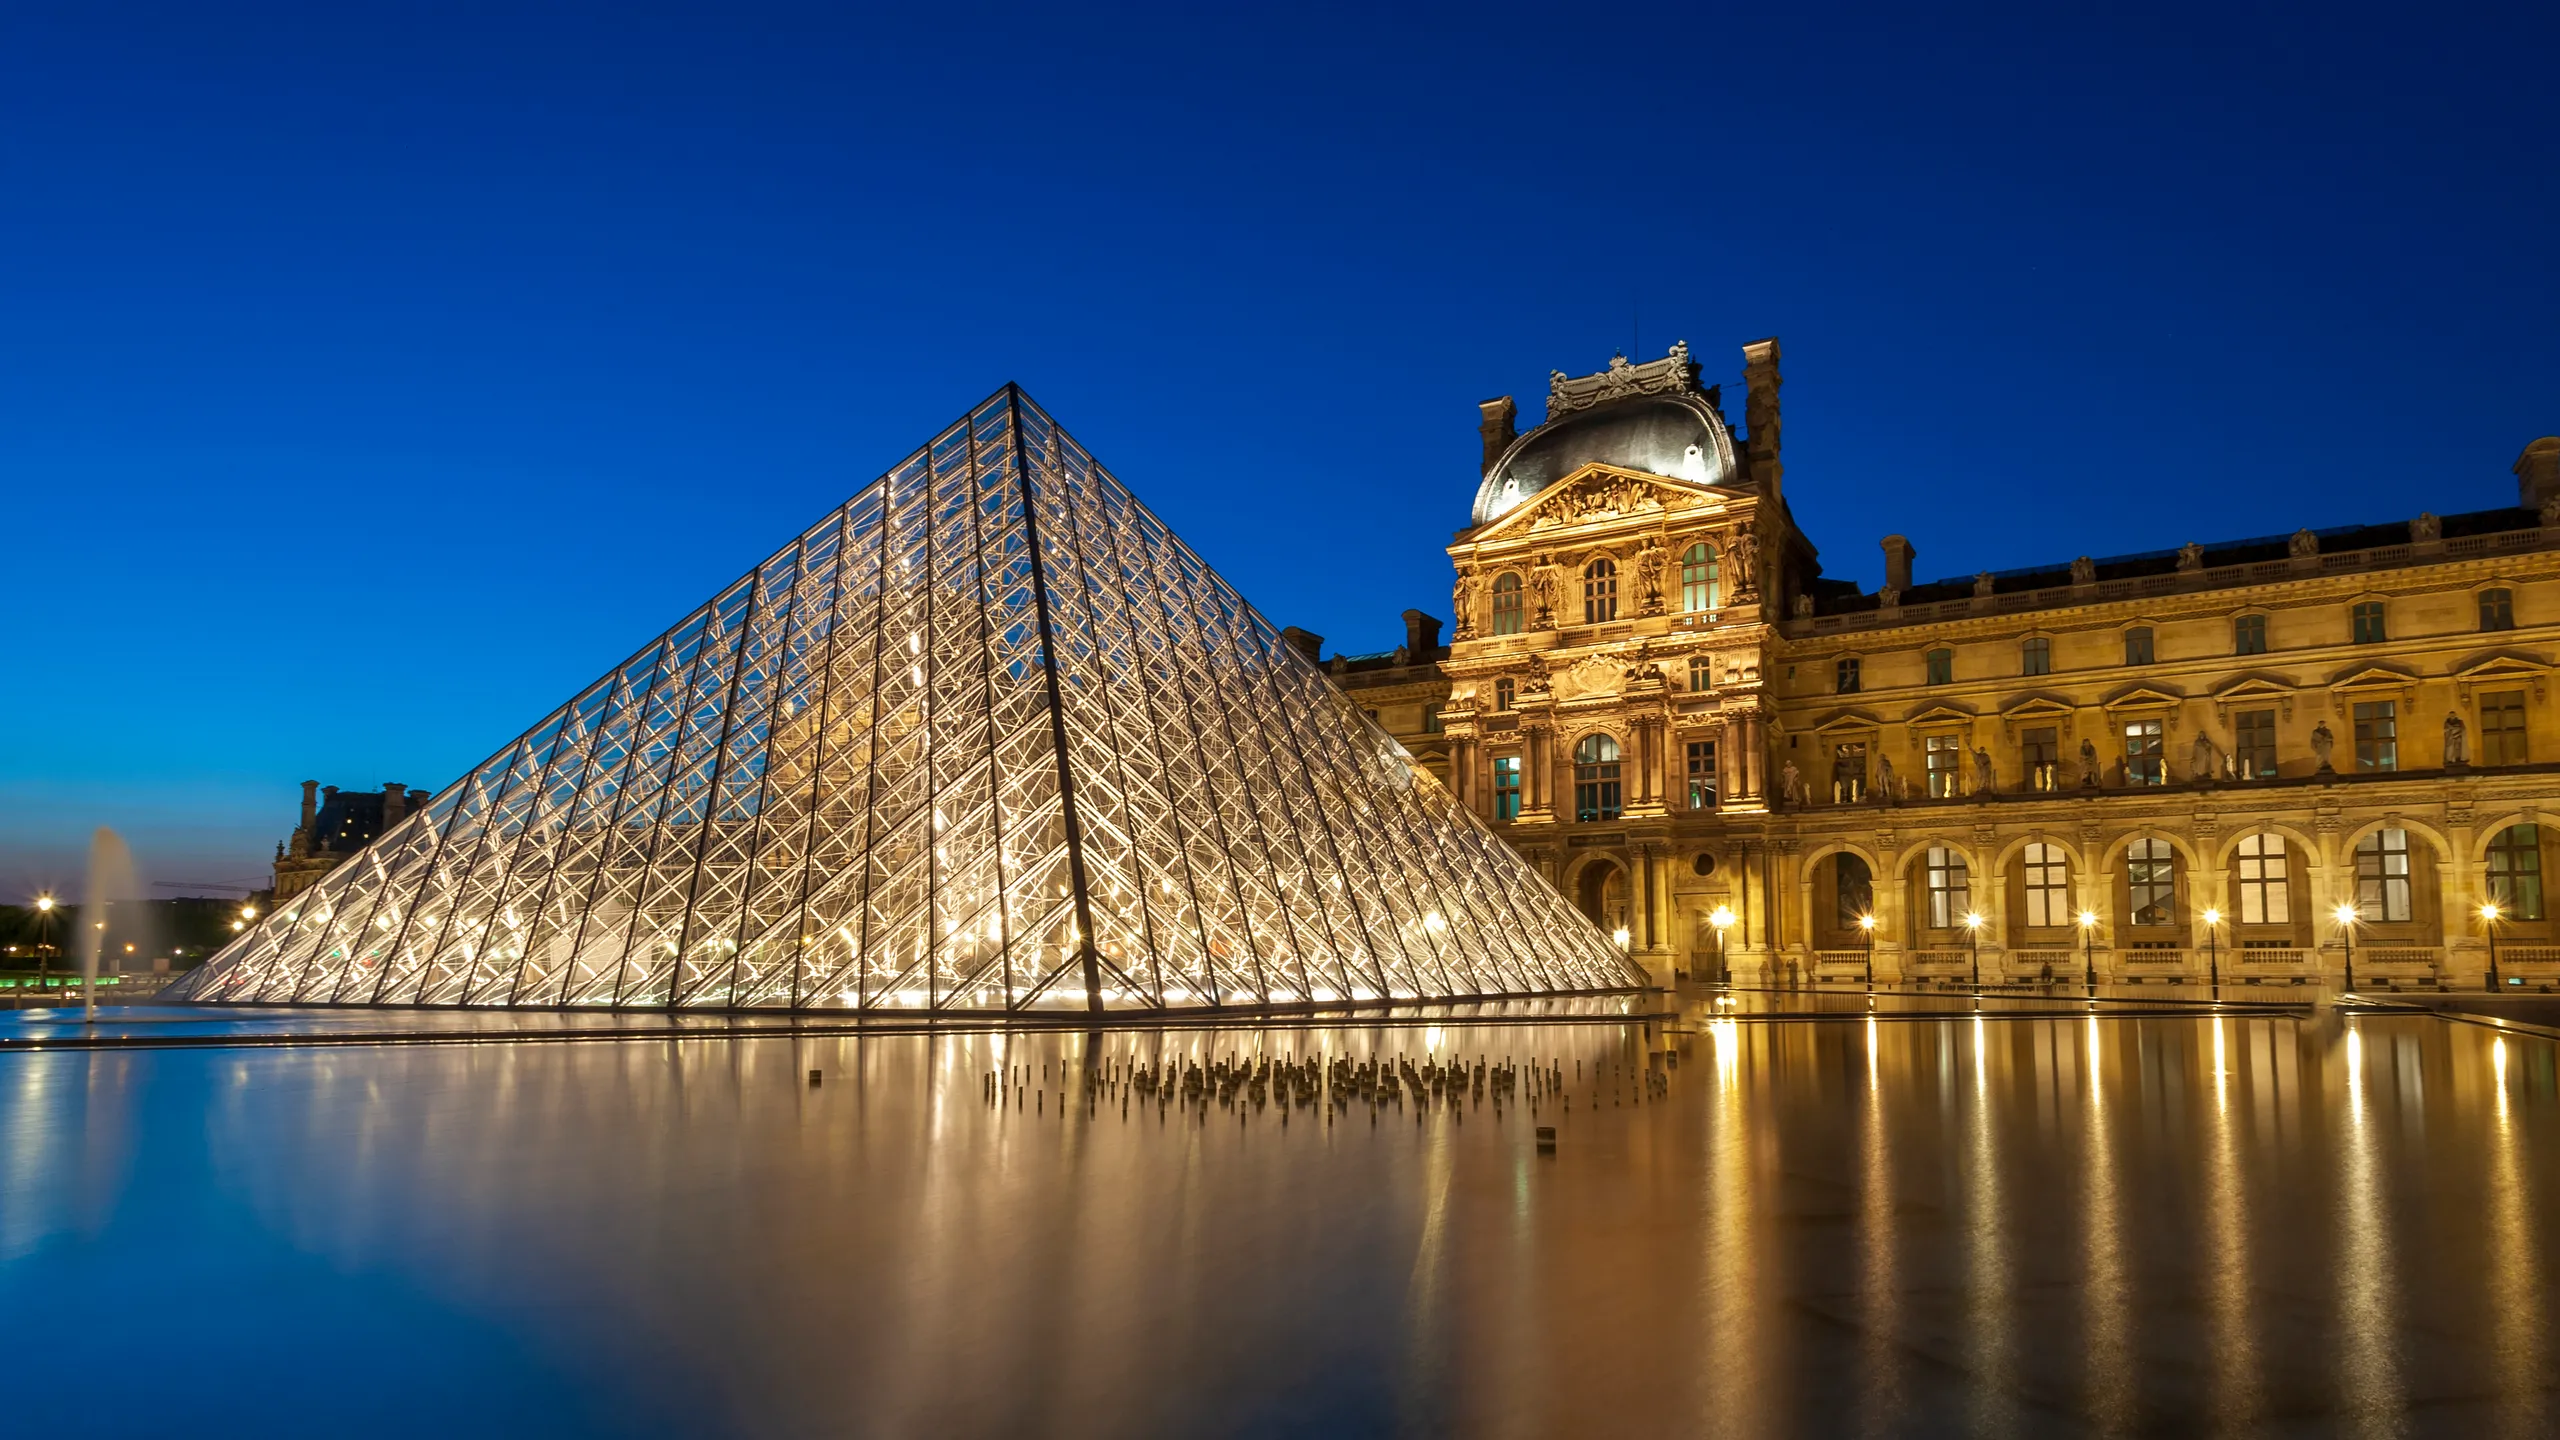 Vue nocturne du Musée du Louvre et de sa pyramide en verre avec le texte 'LA DÉFENSE PÉNALE SUR MESURE' affiché en surimpression, symbolisant un service juridique personnalisé.